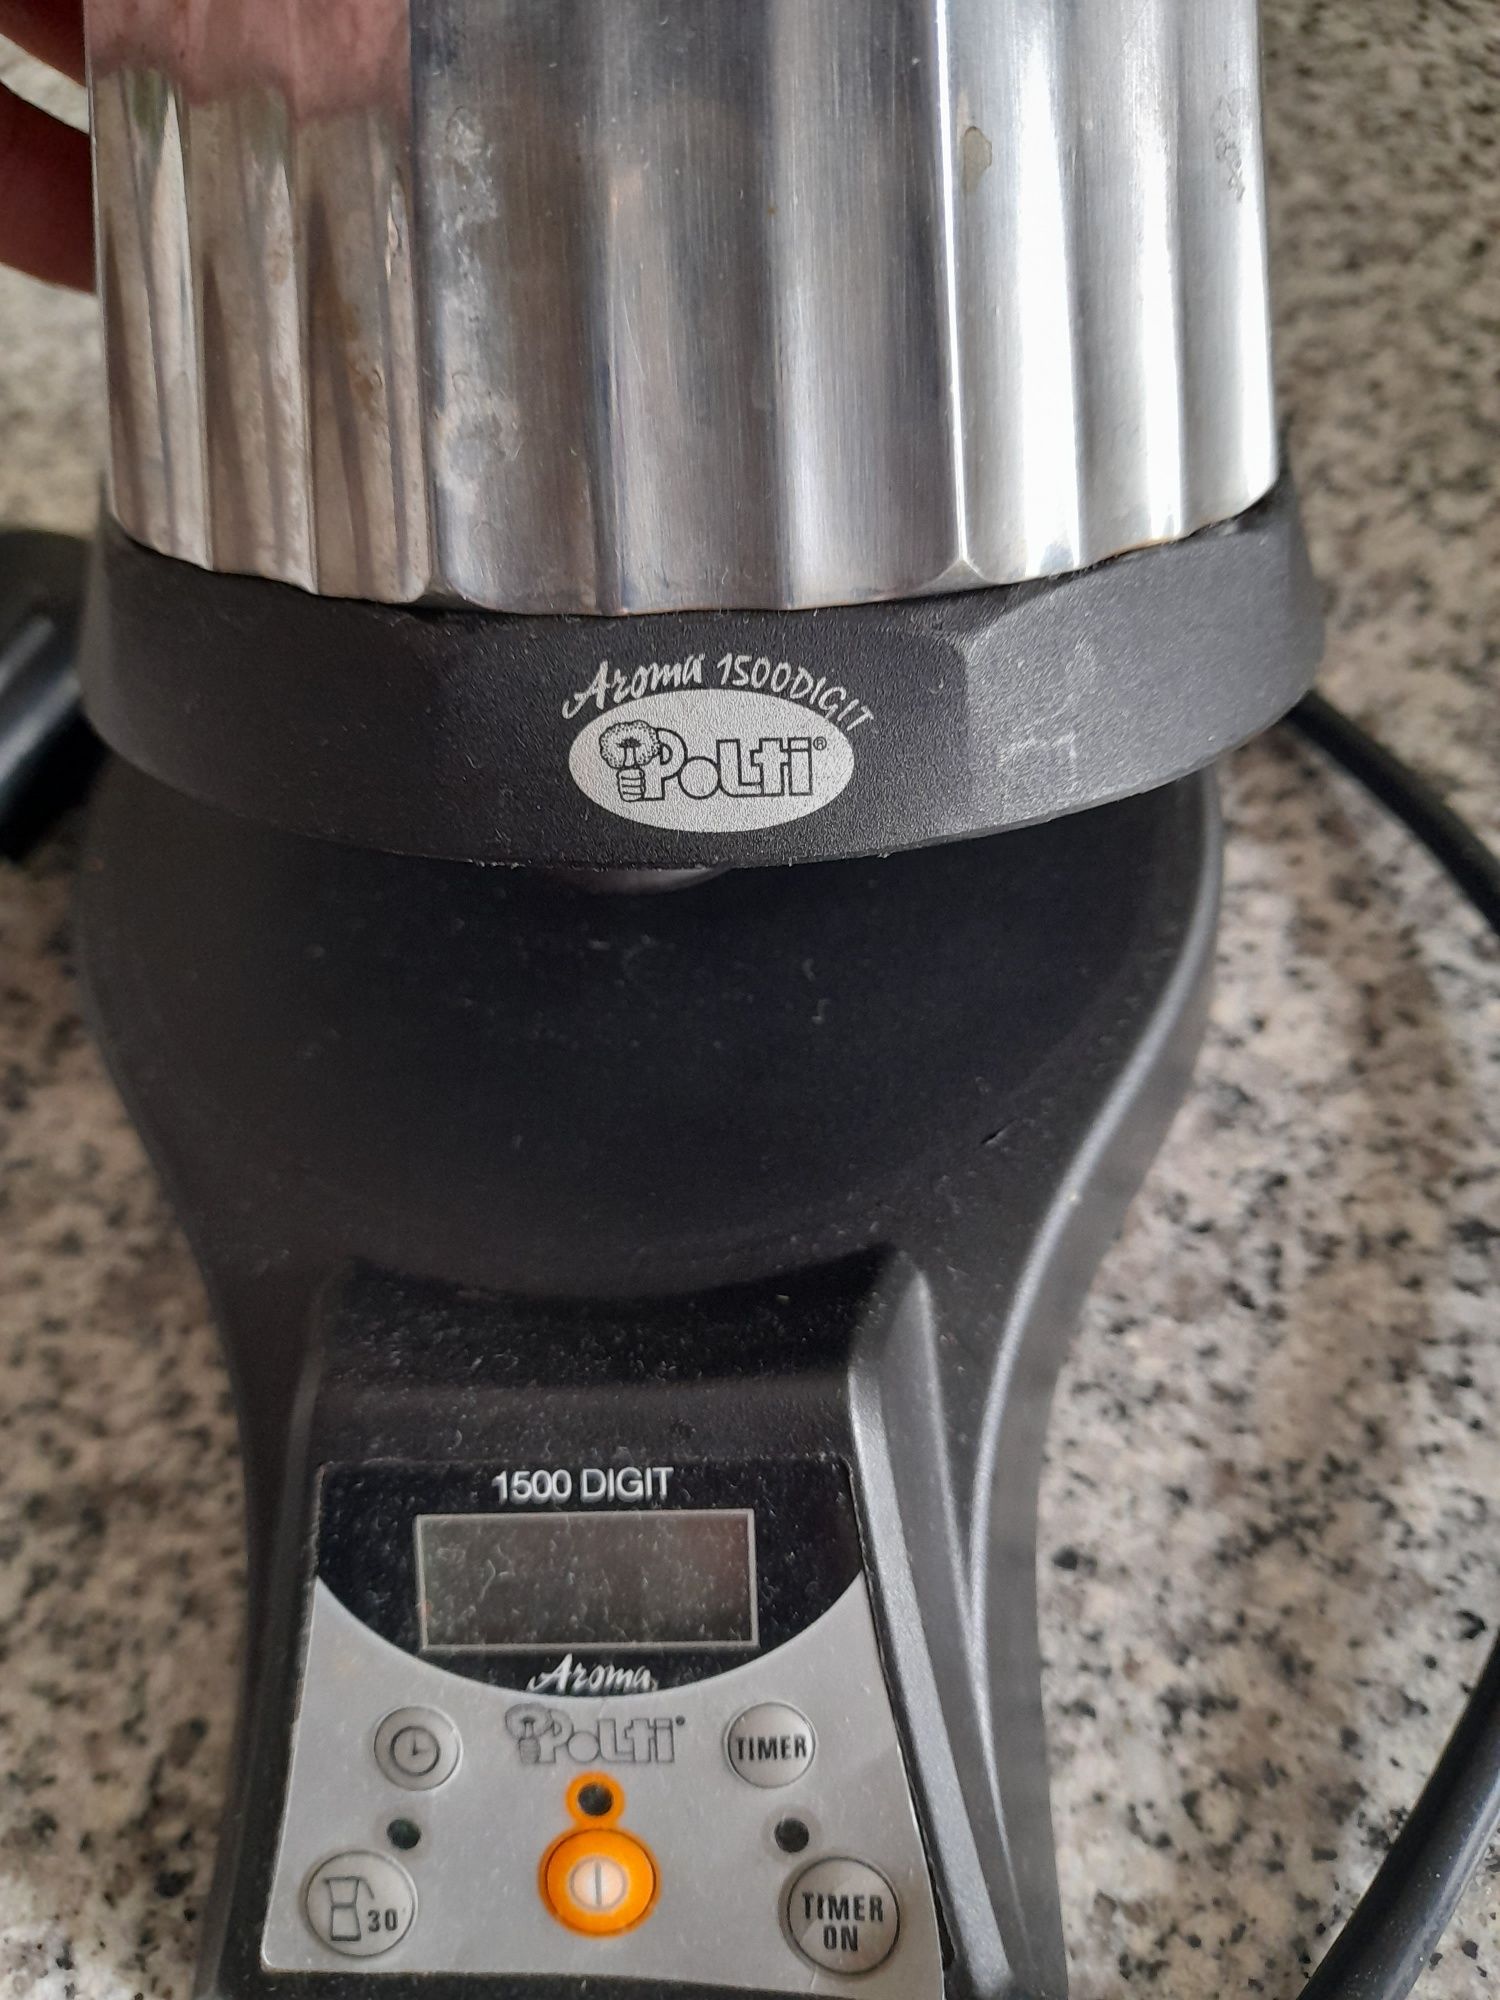 Maquina de café-polti aroma 1500 digit